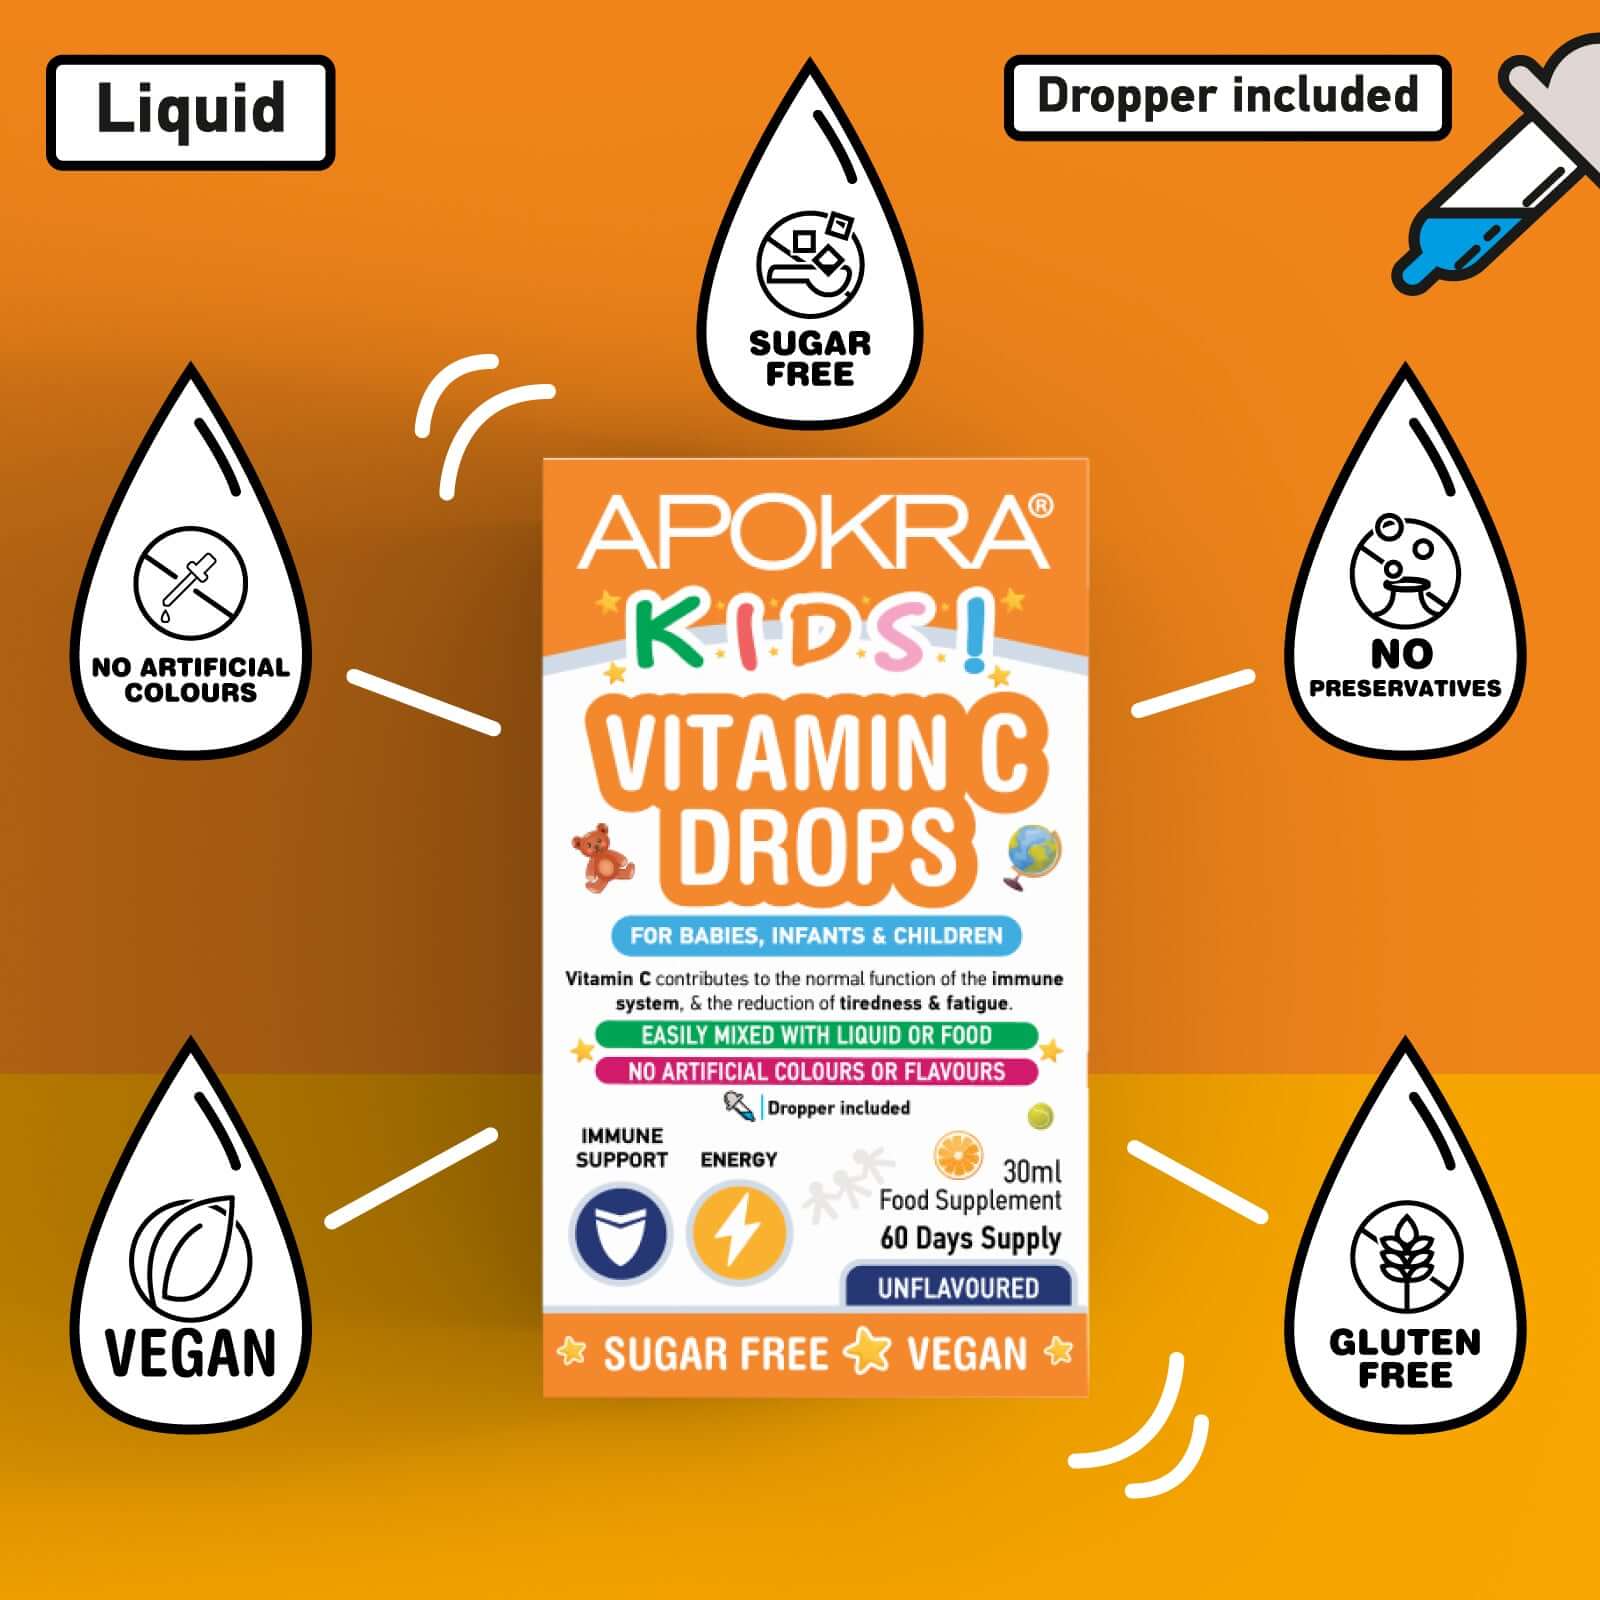 Benefits of vitamin C drops - APOKRA